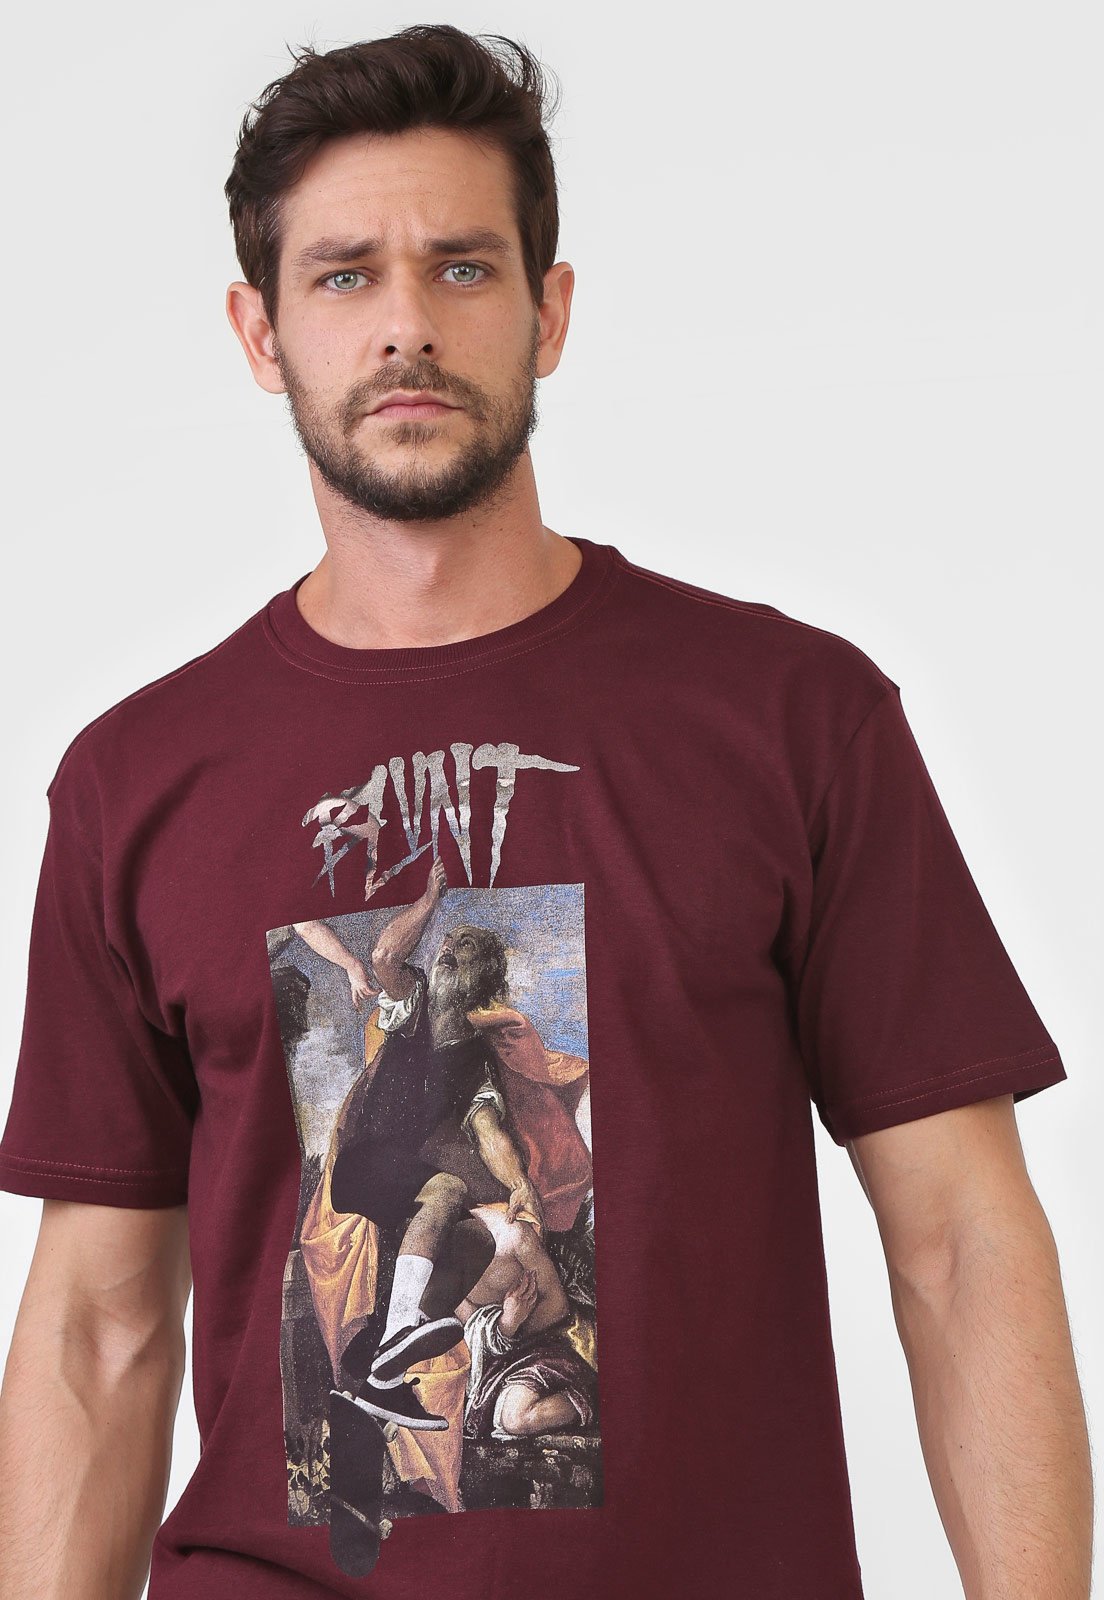 No Comply Skate Shop Blunt Brasil Camisa Blunt - Caveman